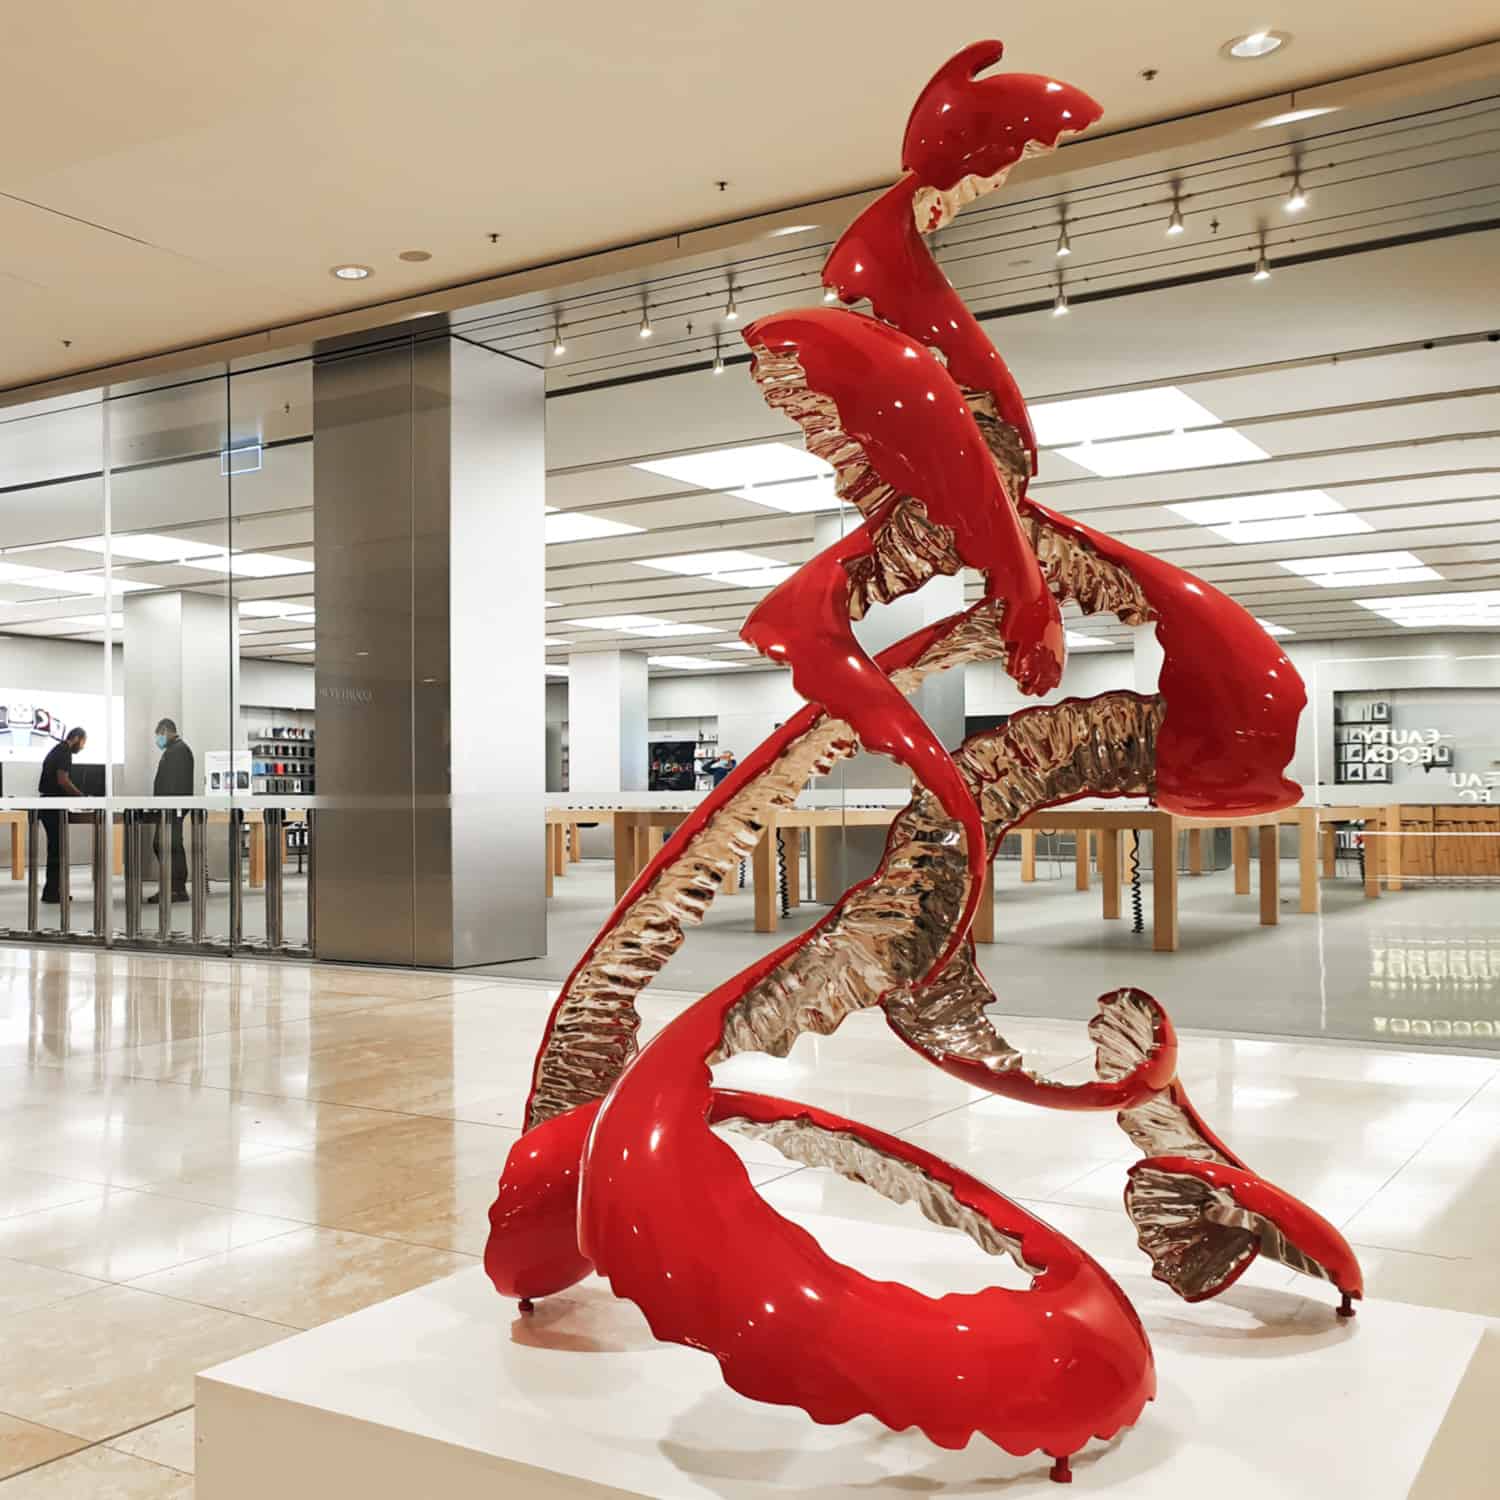 Red-Peel-Poem---150x90cm-STAINLESS-STEEL-&-BAKED-ENAMEL-[stainless-steel,-freestanding,-outdoor]-rae-bolotin-red-pop-art-sculpture-australian-art